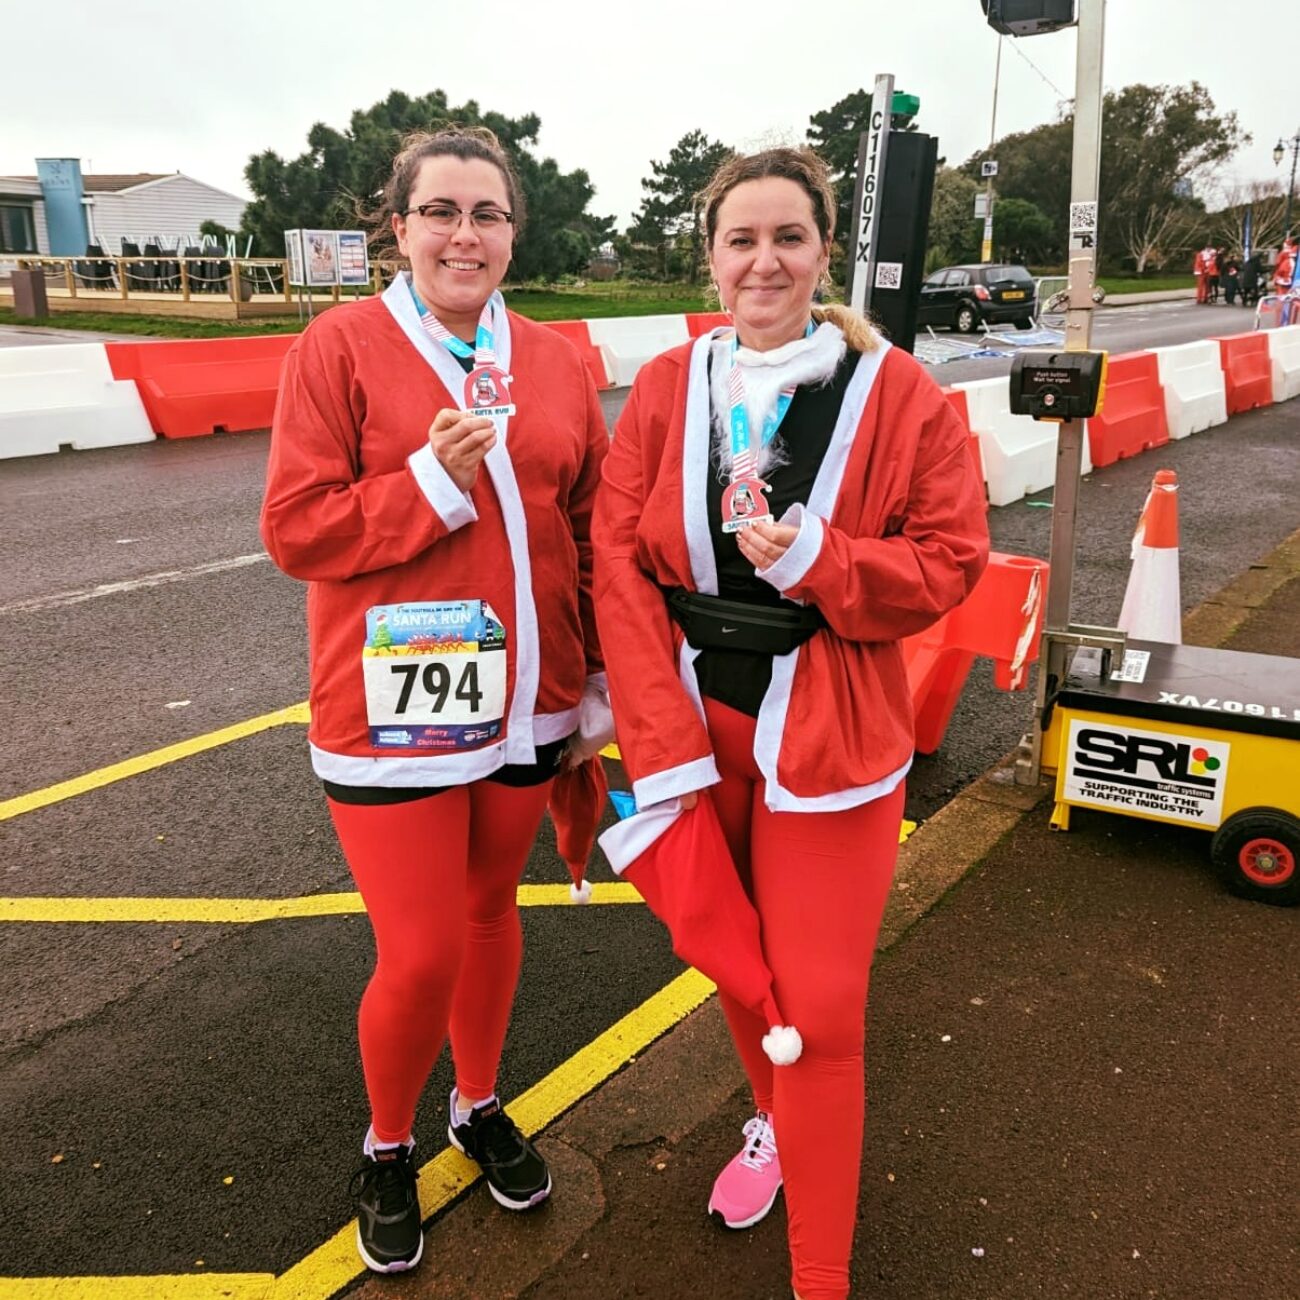 Santa dash runners ran in aid of Rowans Hospice